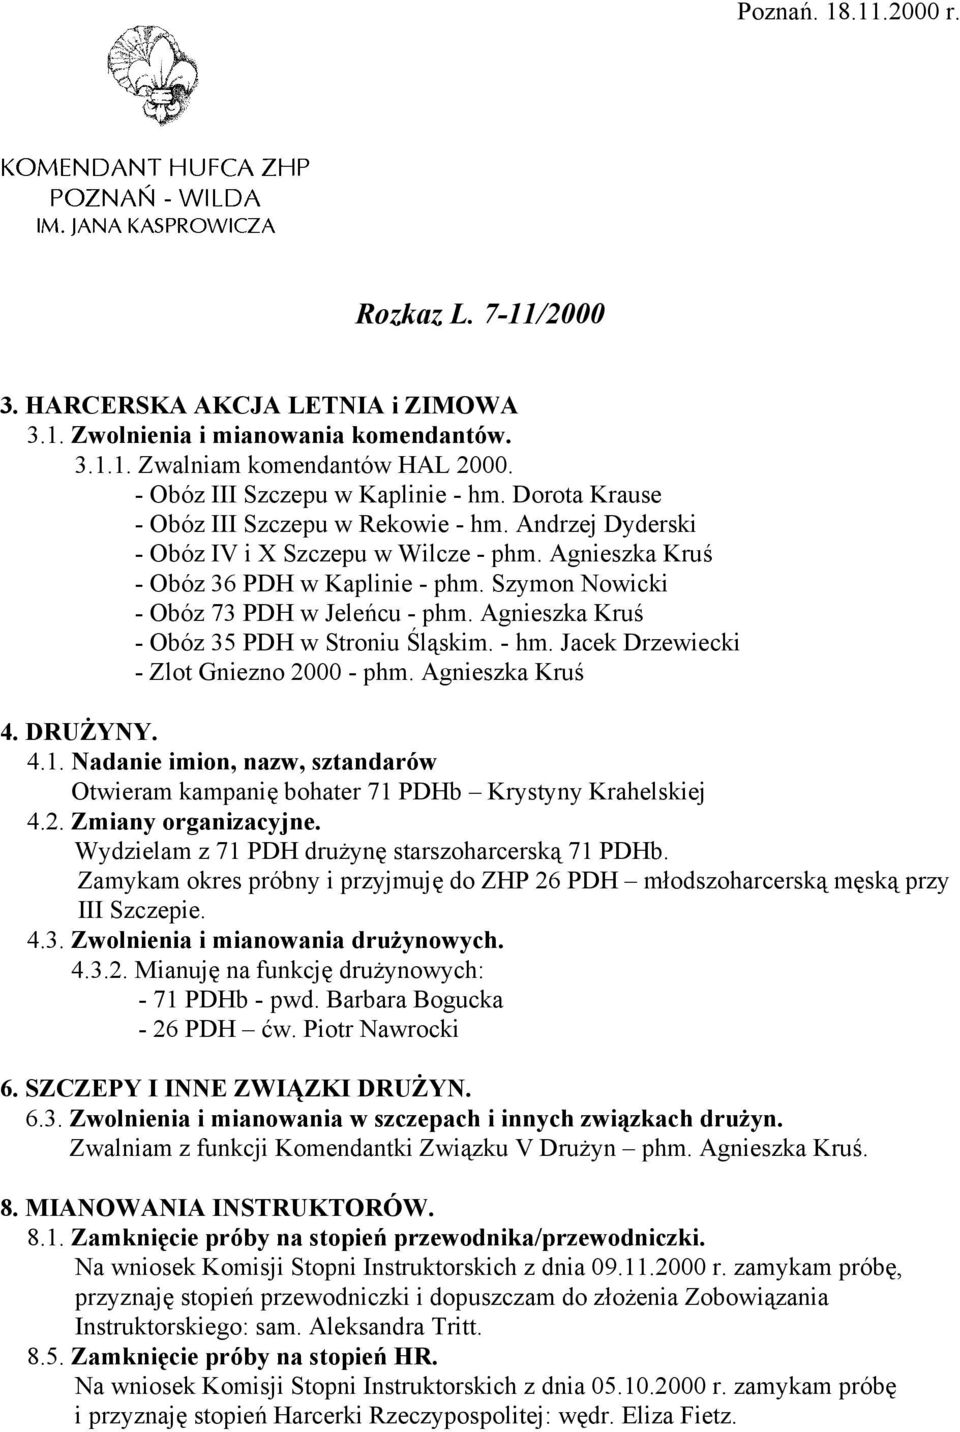 Agnieszka Kruś - Obóz 35 PDH w Stroniu Śląskim. - hm. Jacek Drzewiecki - Zlot Gniezno 2000 - phm. Agnieszka Kruś 4.1.